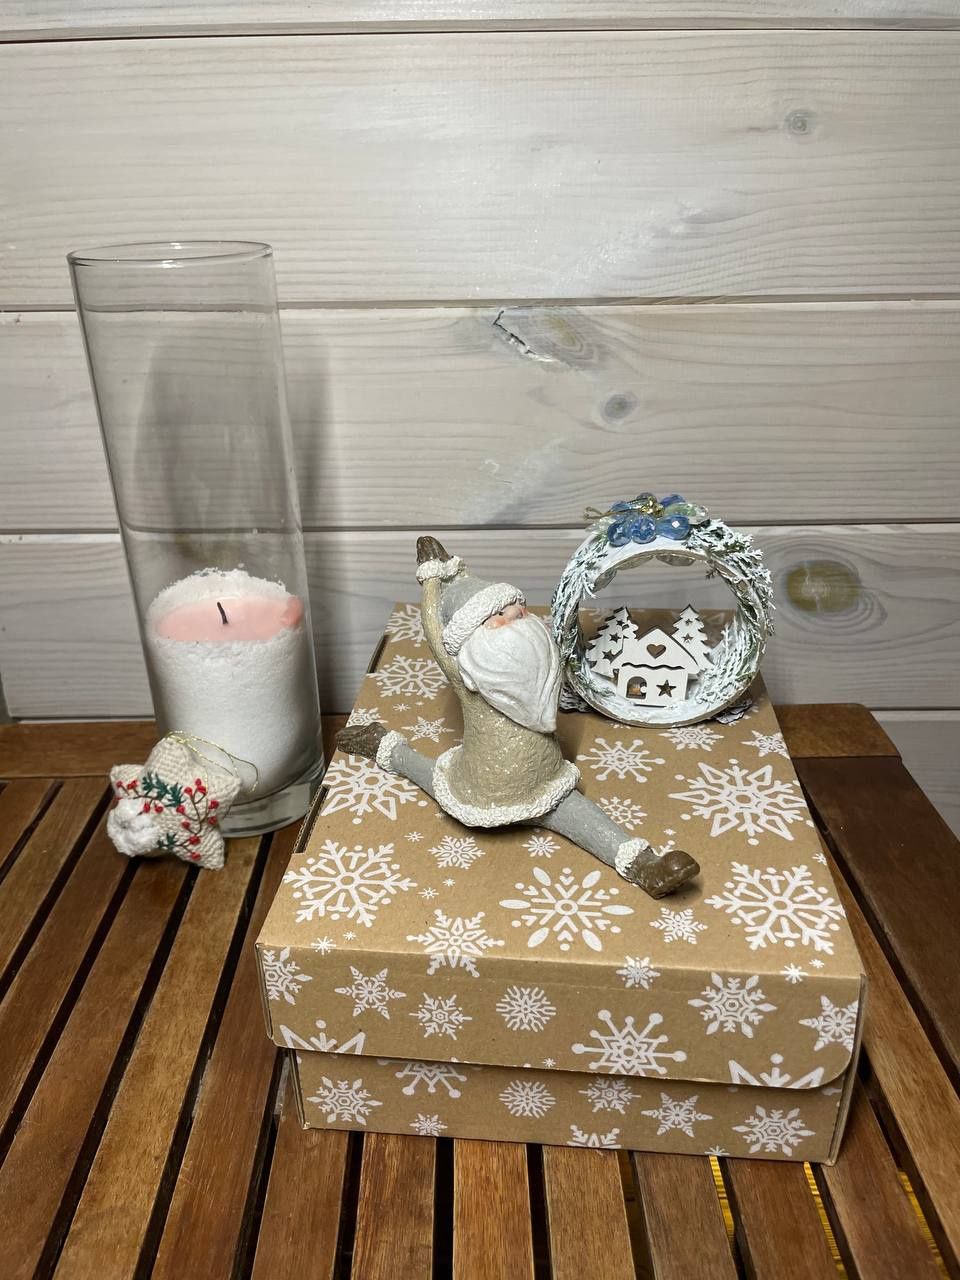 Подарочные наборы с керамикой ручной работы, чаем и мёдом.